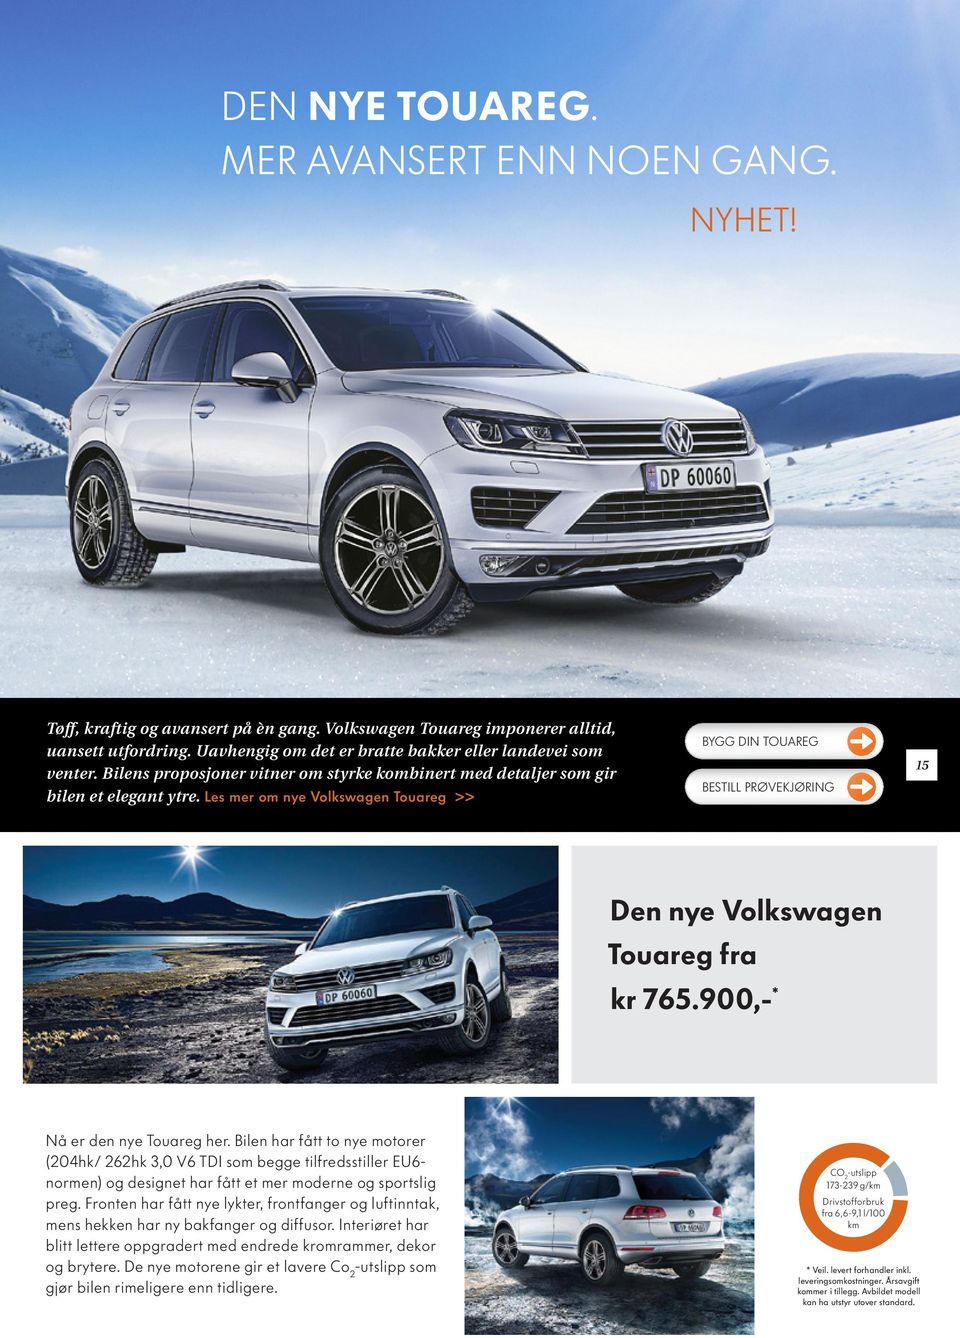 Les mer om nye Volkswagen Touareg >> BYGG DIN TOUAREG 15 Den nye Volkswagen Touareg fra kr 765.900,- * Nå er den nye Touareg her.